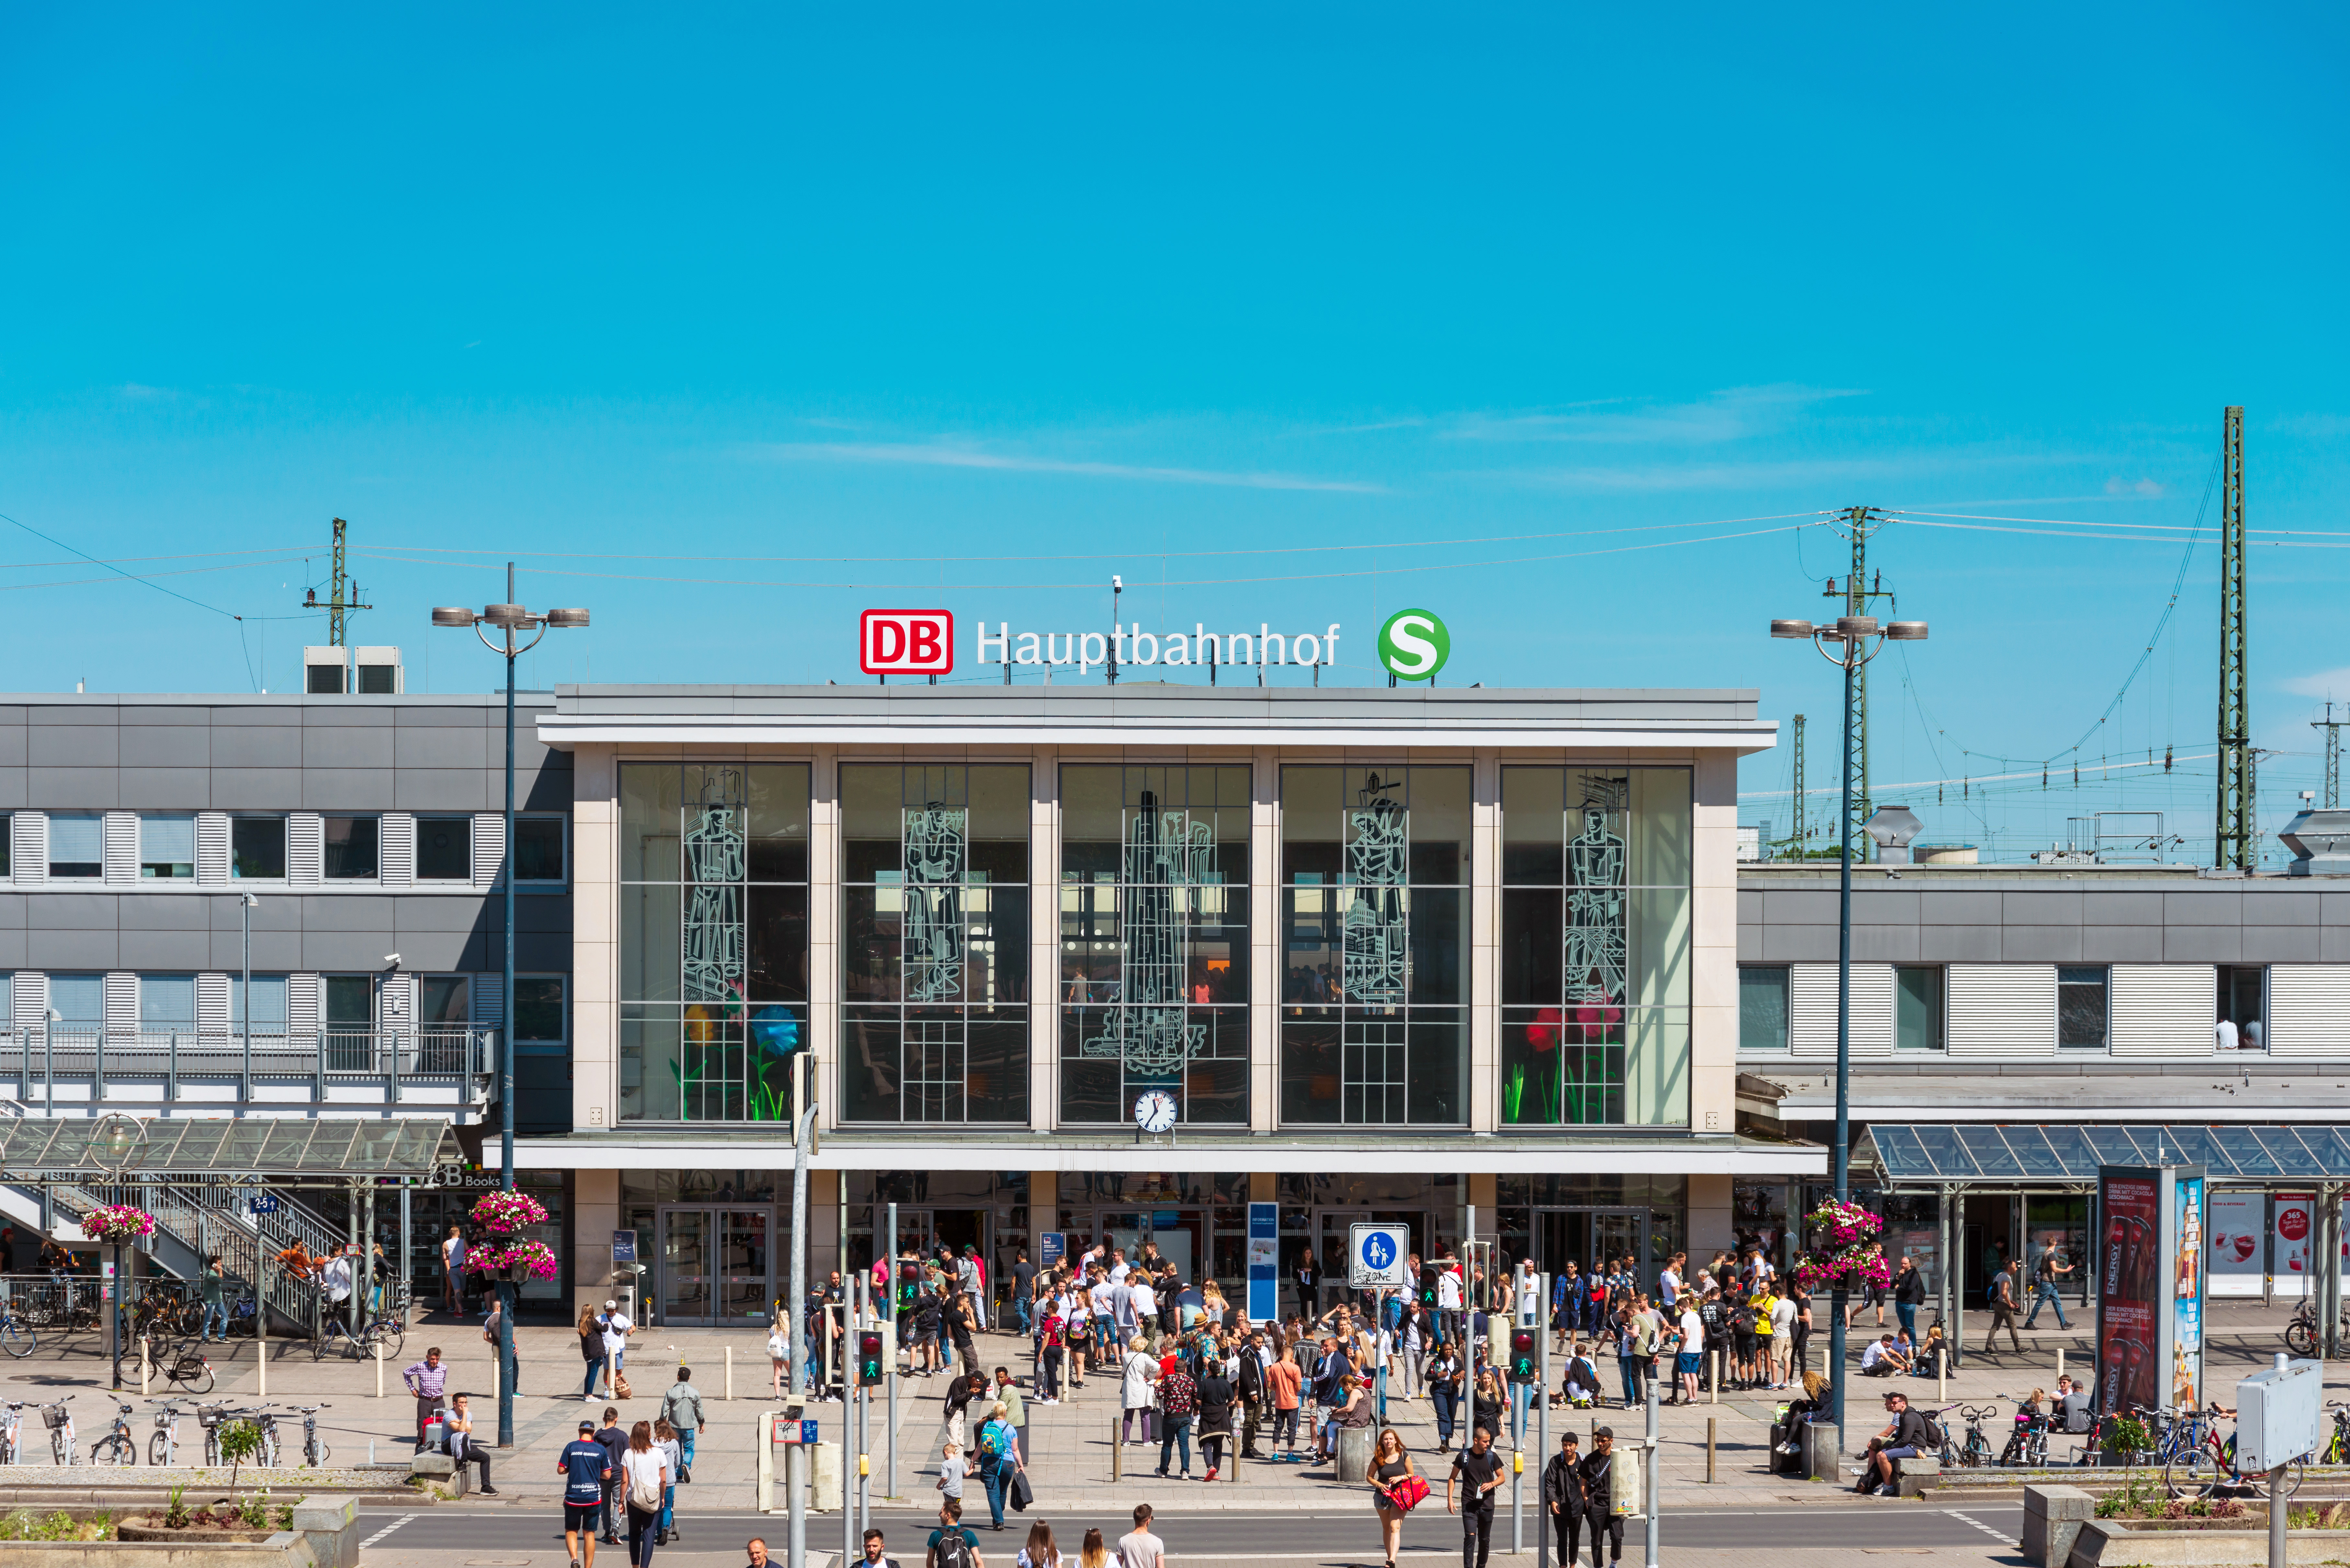 Hauptbahnhof, Dortmund